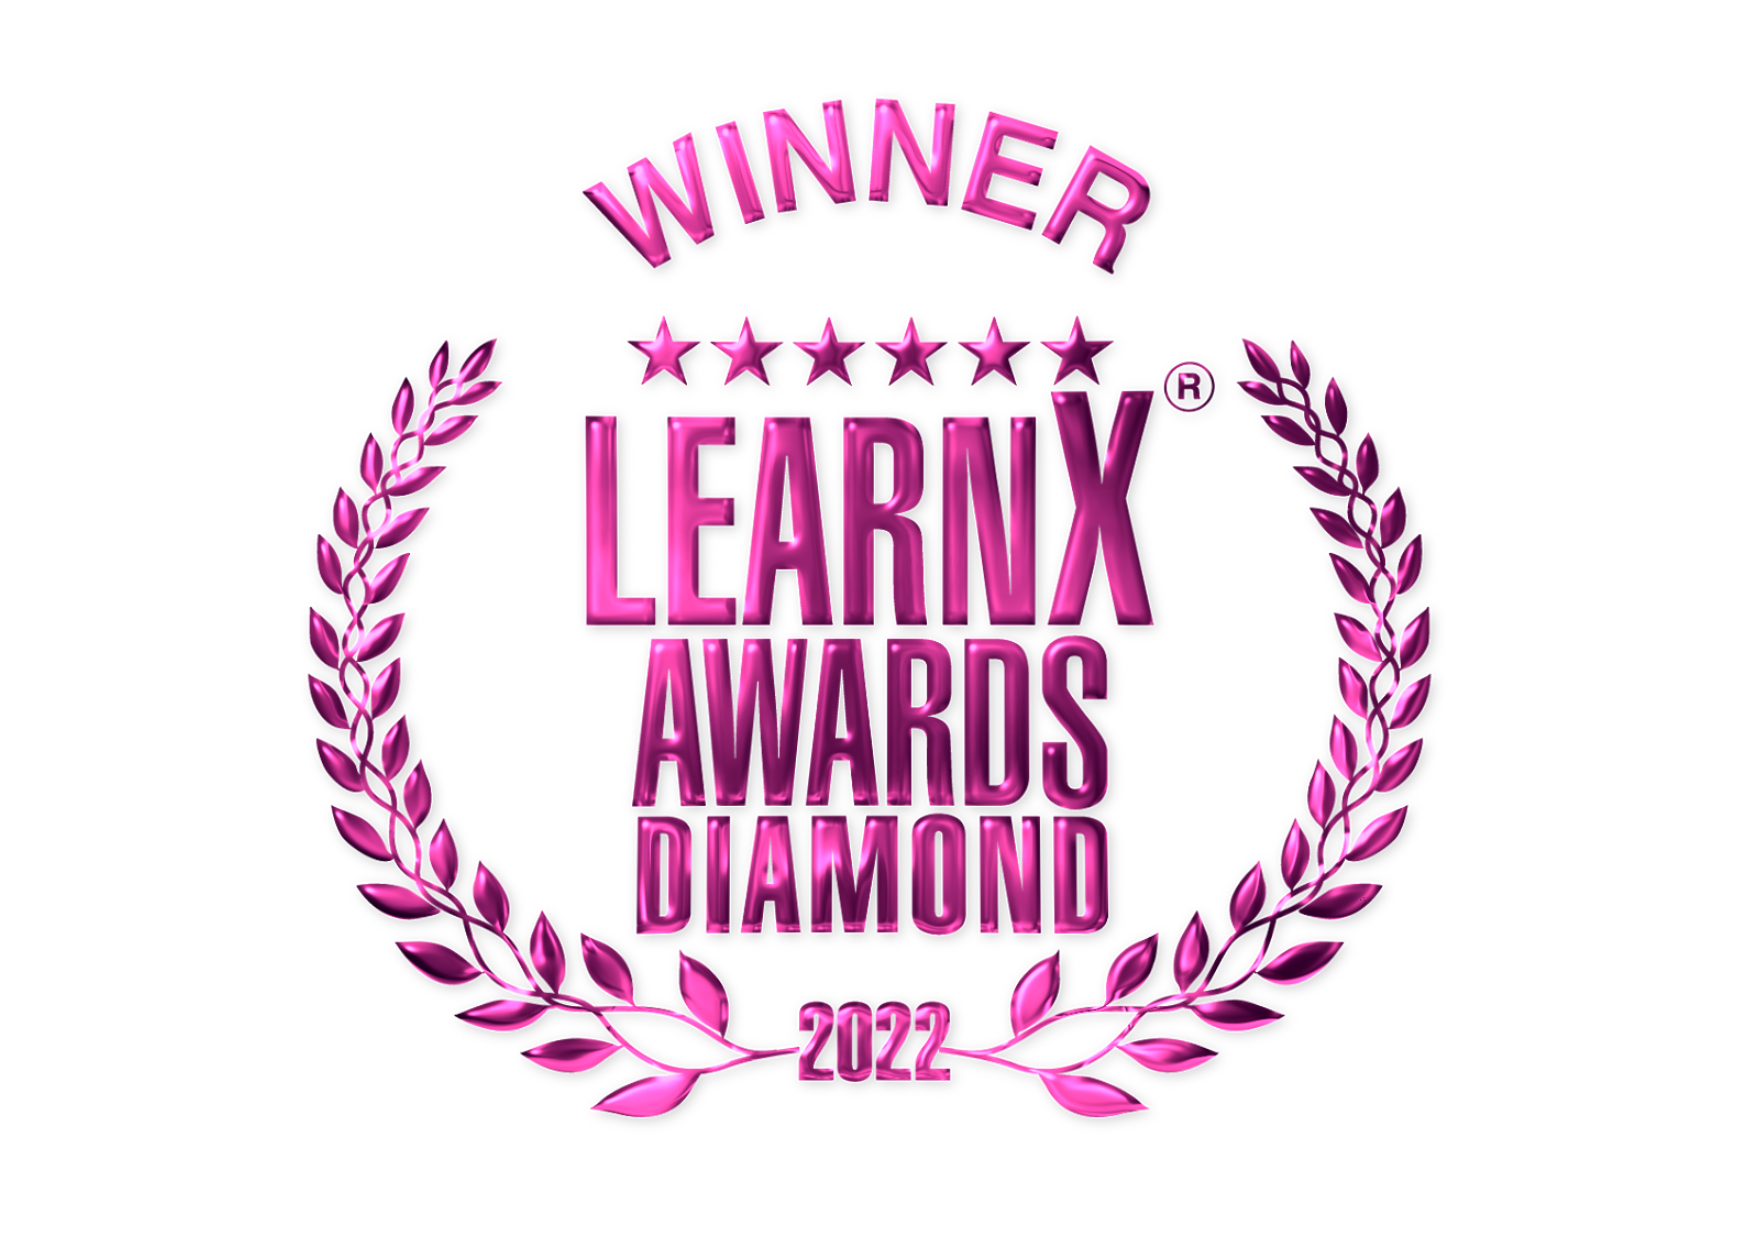 Diamond LearnX 2022 Award